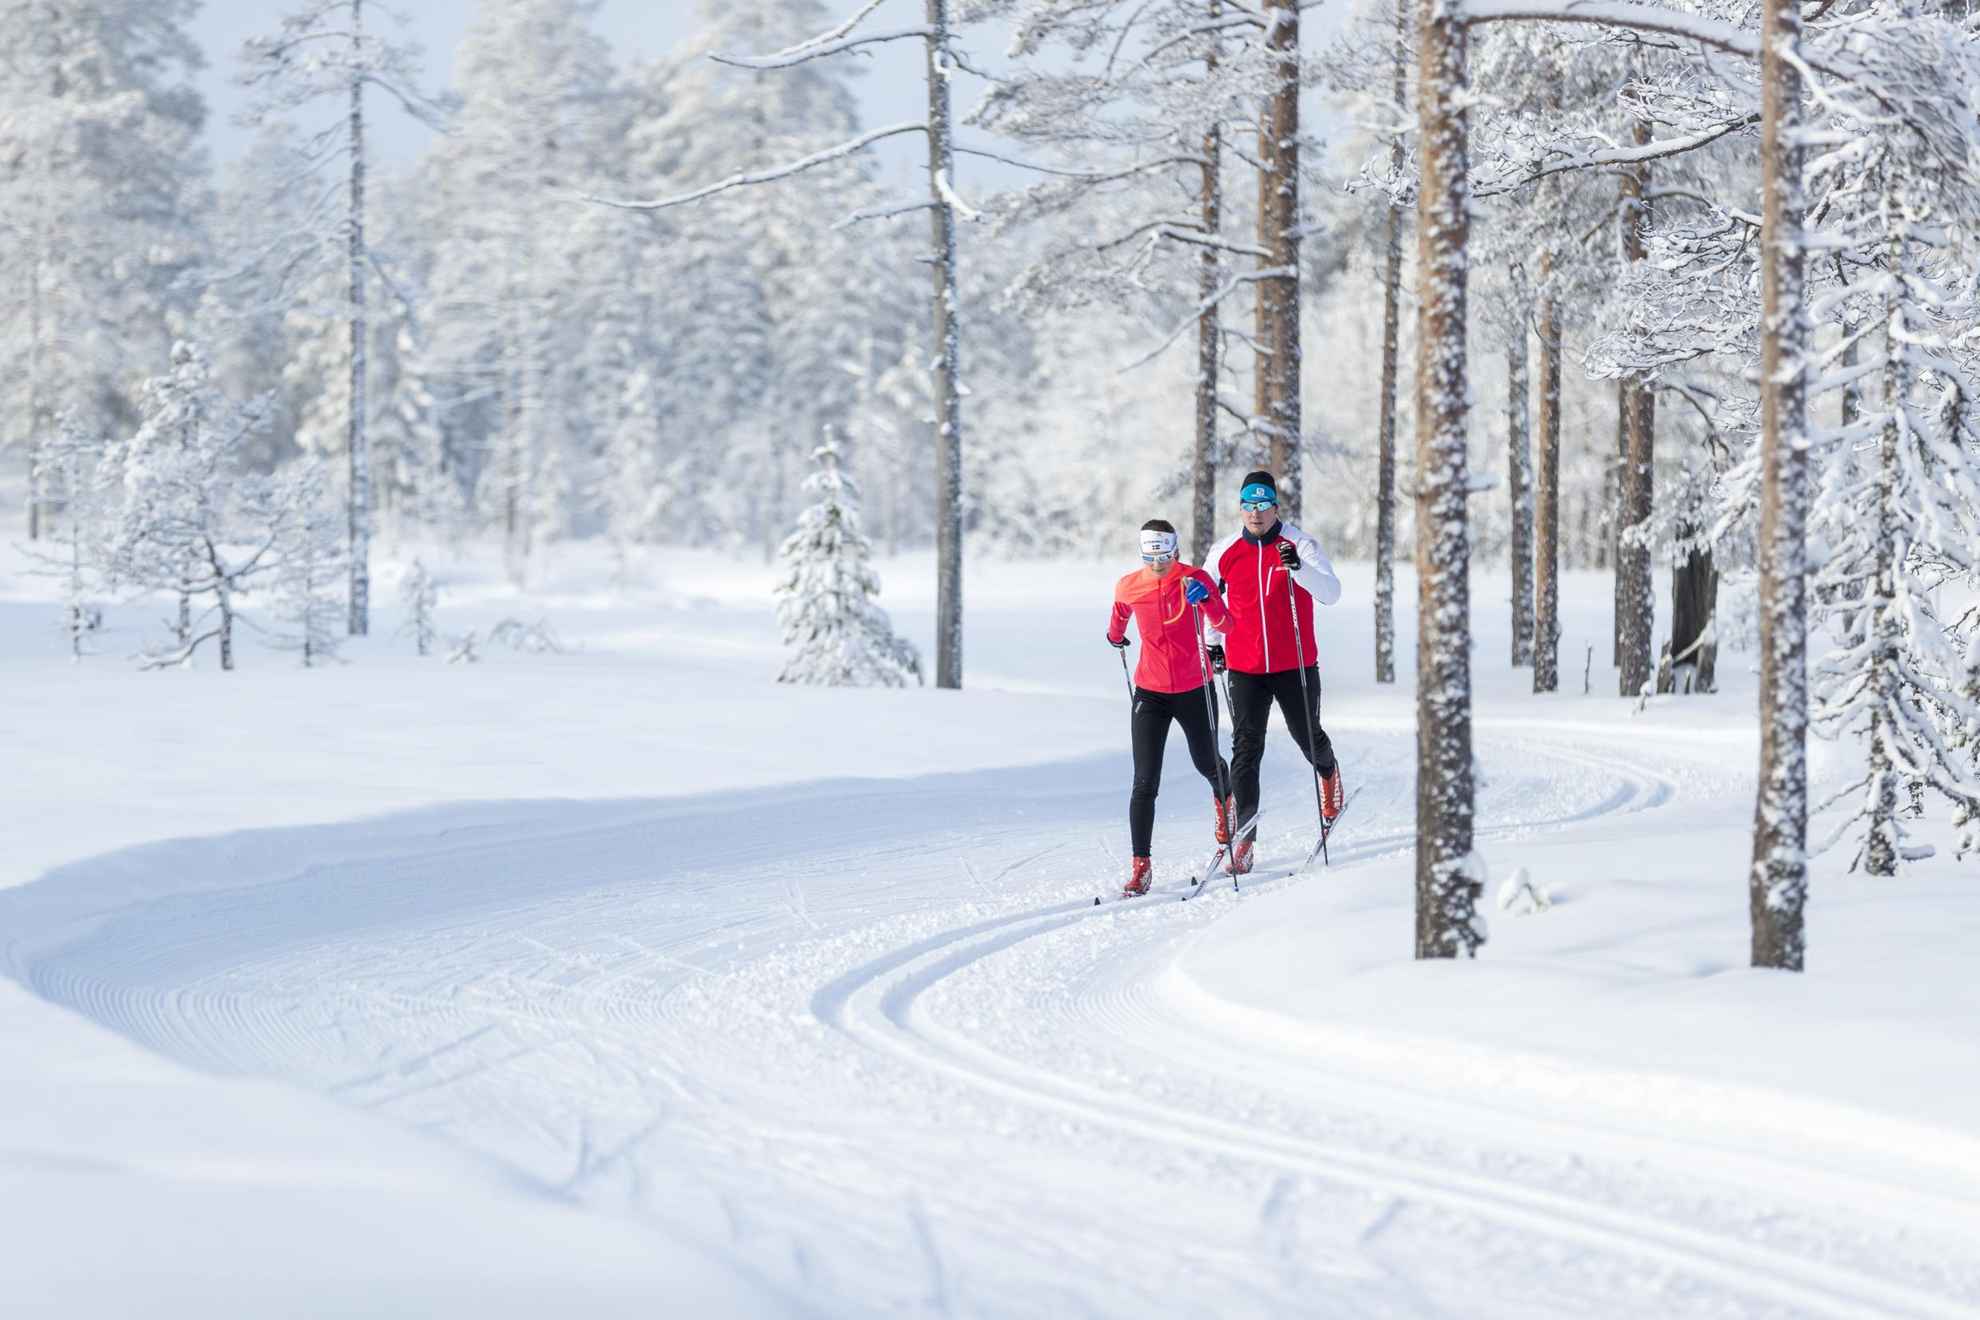 Zwei Personen in roten Jacken laufen Langlauf in einem verschneiten Wald.